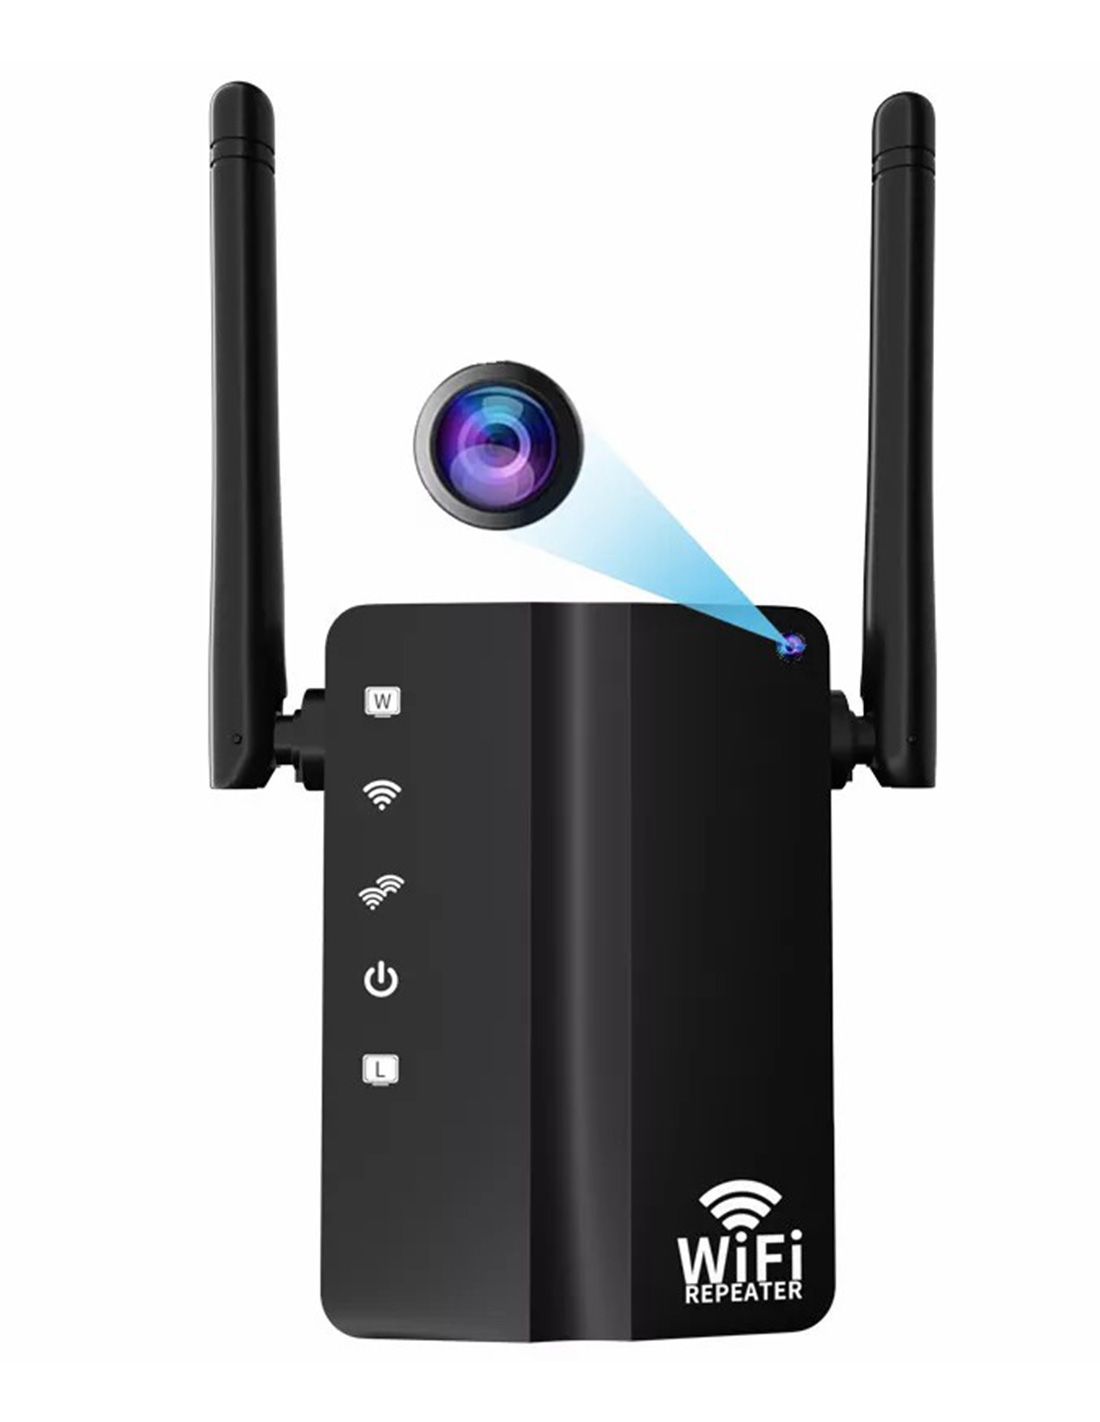 Caméra espion routeur wifi sans fil - Full hd 1080p